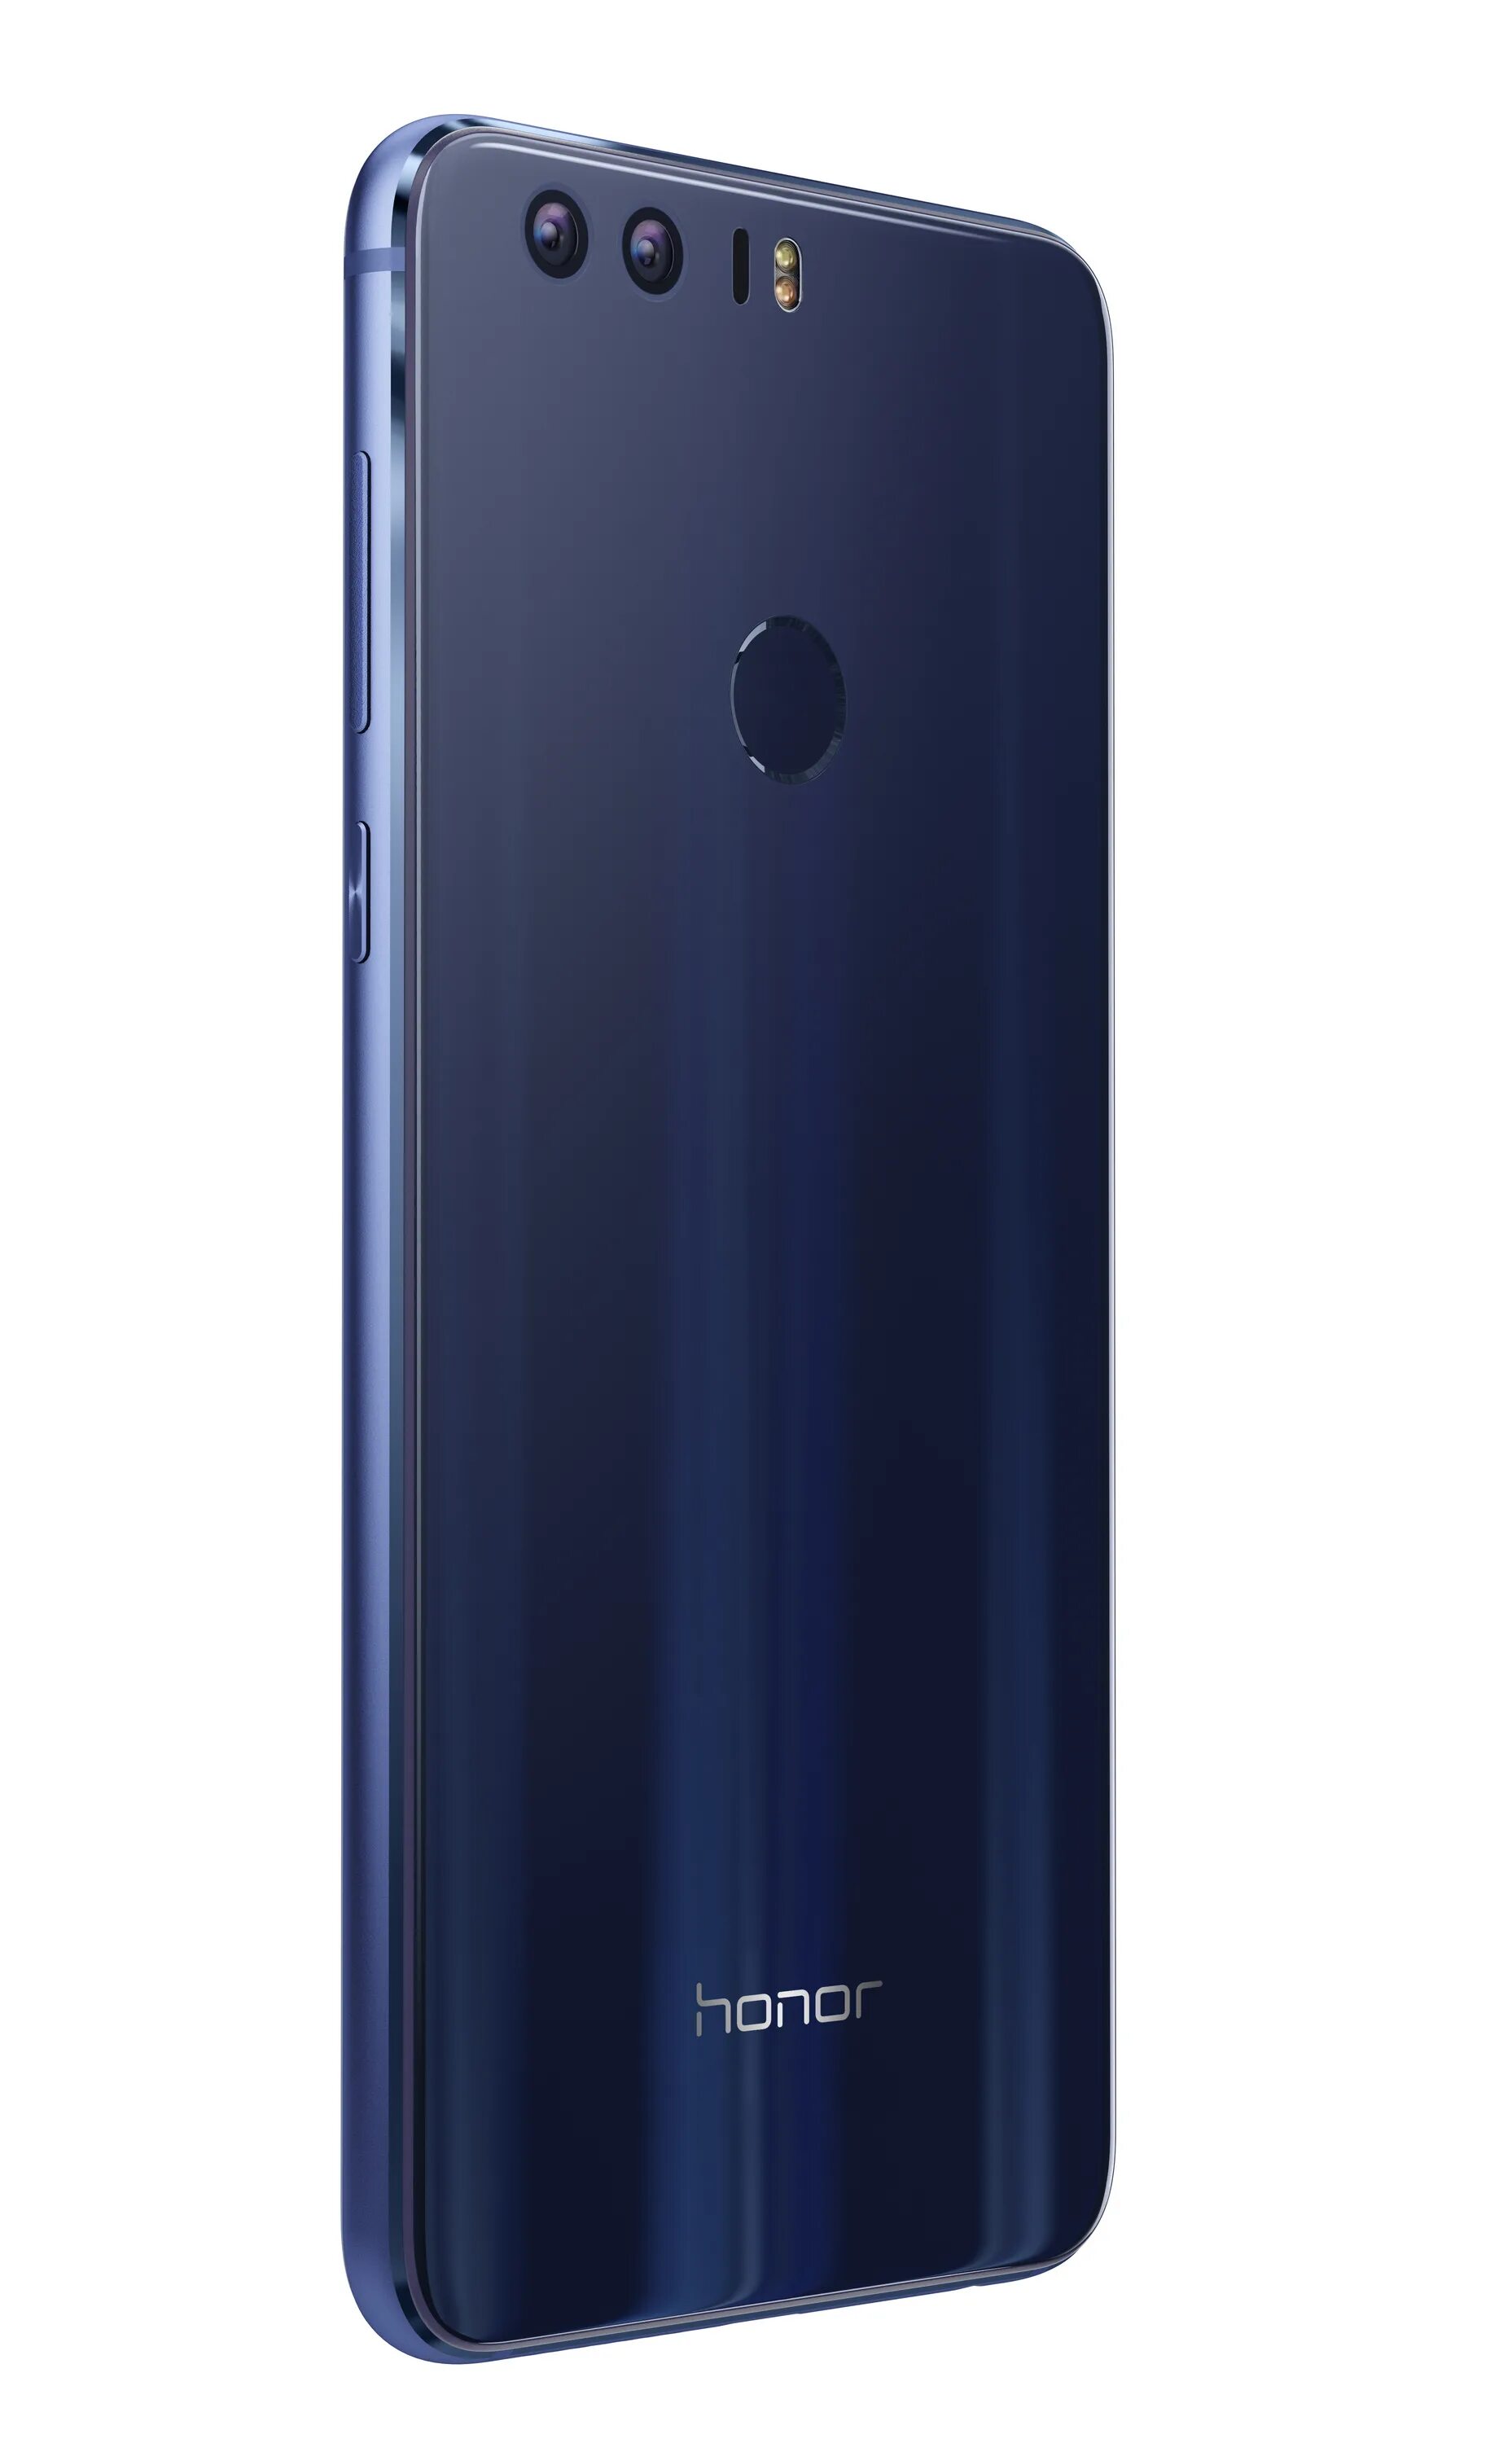 Huawei Honor 8 64gb Ram 4gb. Huawei Honor 8 32gb. Honor 8 4/64gb. Huawei Honor 8 32gb Blue (FRD-l09). Honor 8 gb